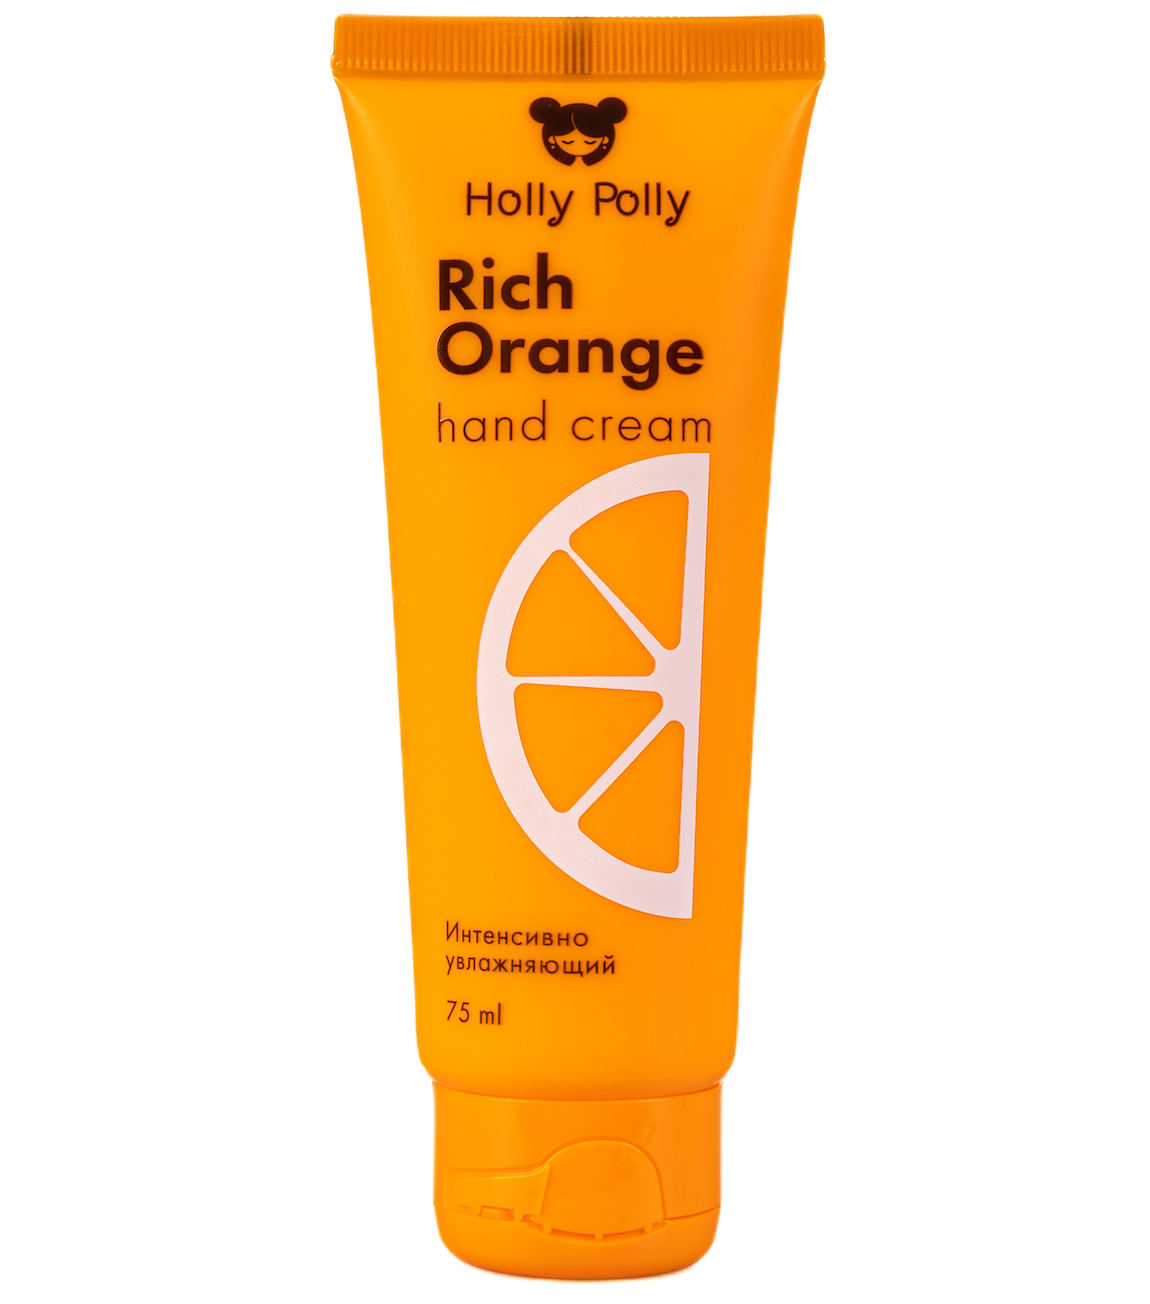 Интенсивно увлажняющий крем для рук Holly Polly Rich Orange с ароматом сочного апельсина